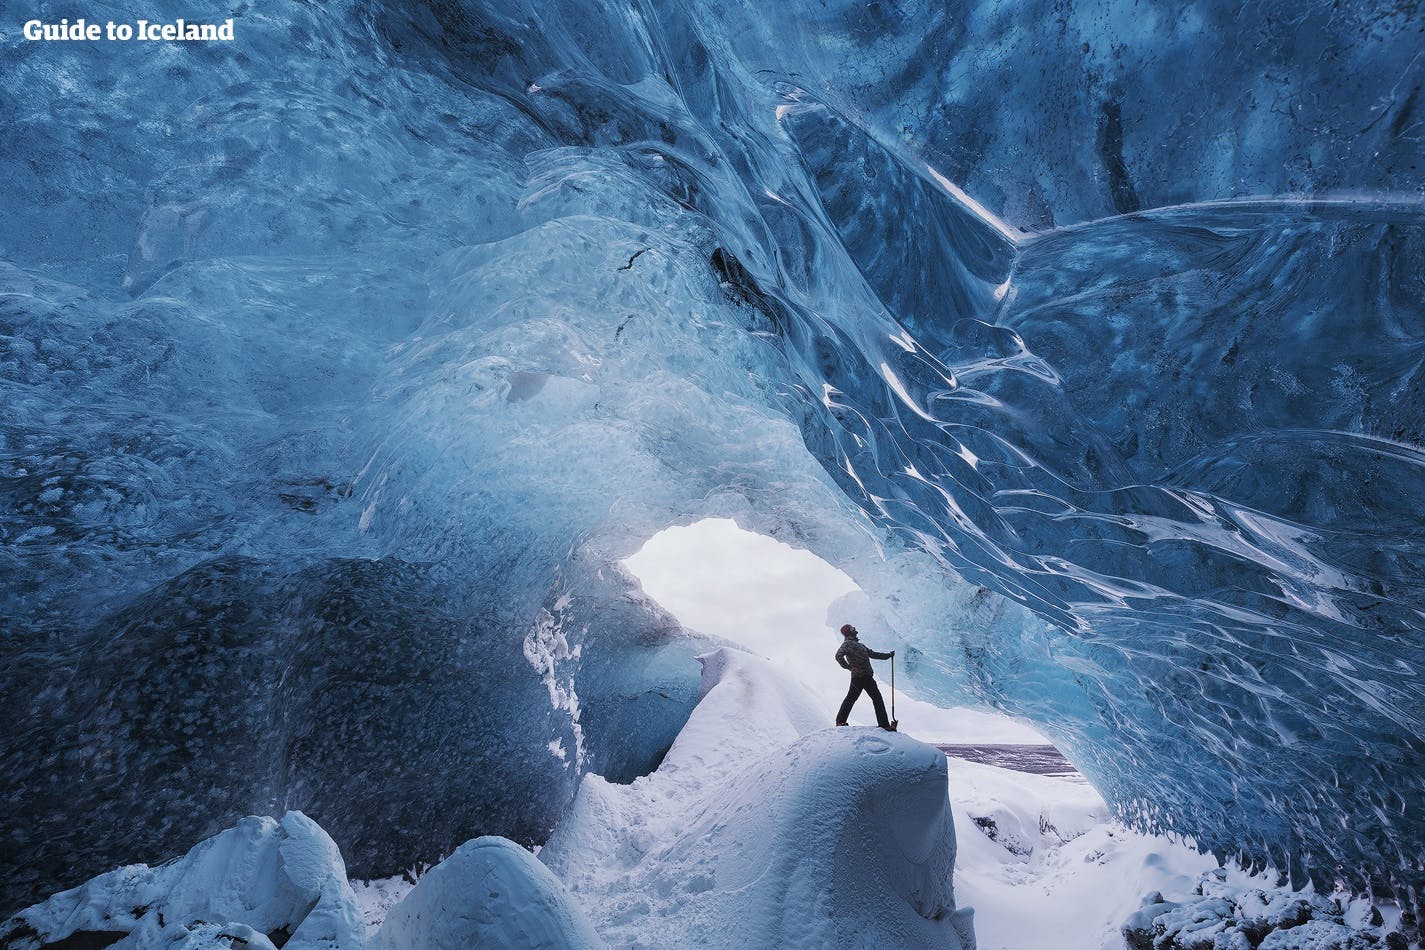 Se requieren cascos y crampones para la cueva de hielo, así que ponte un gorro fino y calzado de senderismo decente.